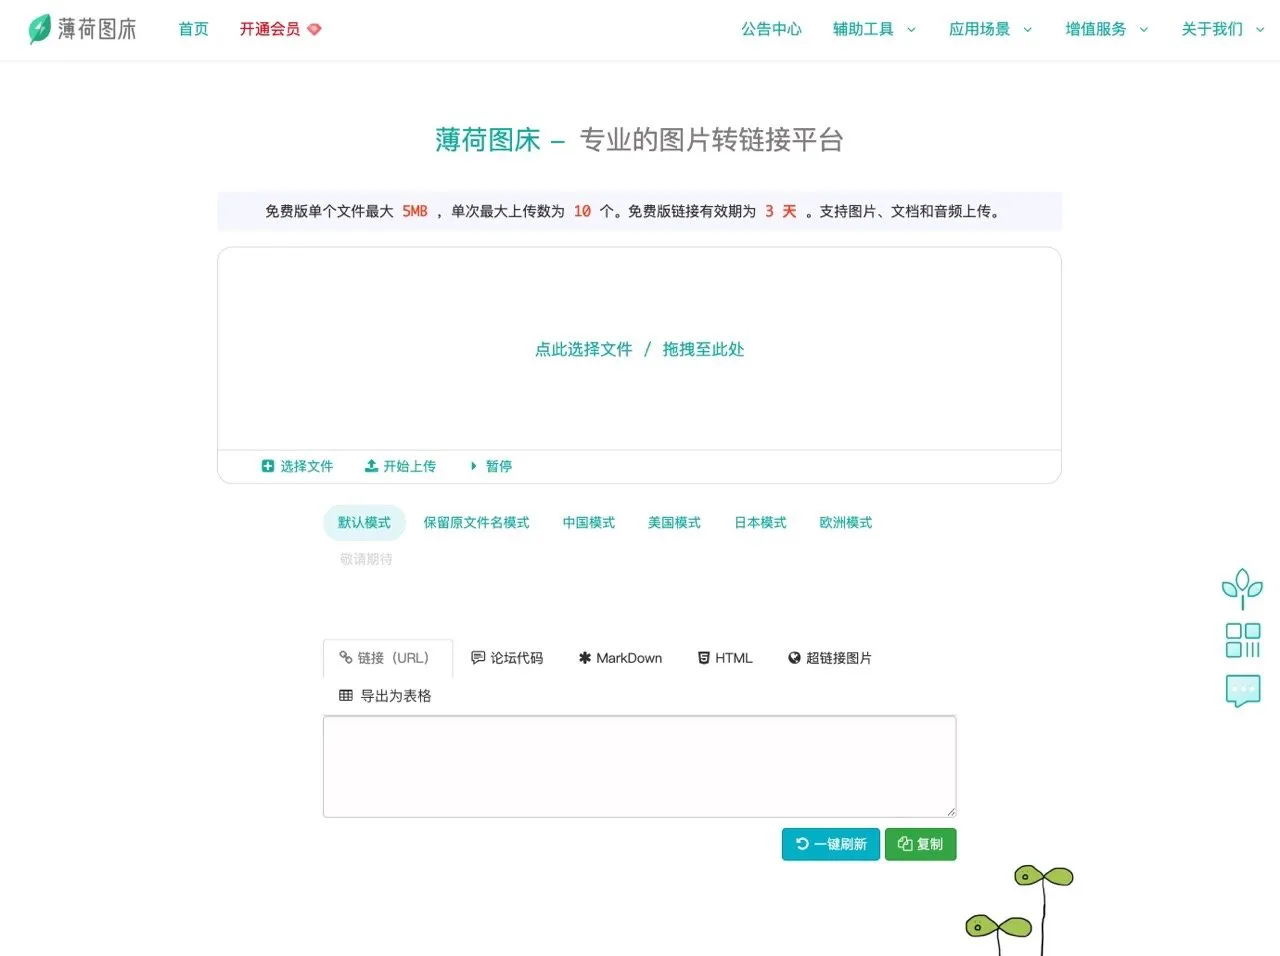 薄荷图床：免费图片转网址服务，中国模式可将图片上传香港服务器